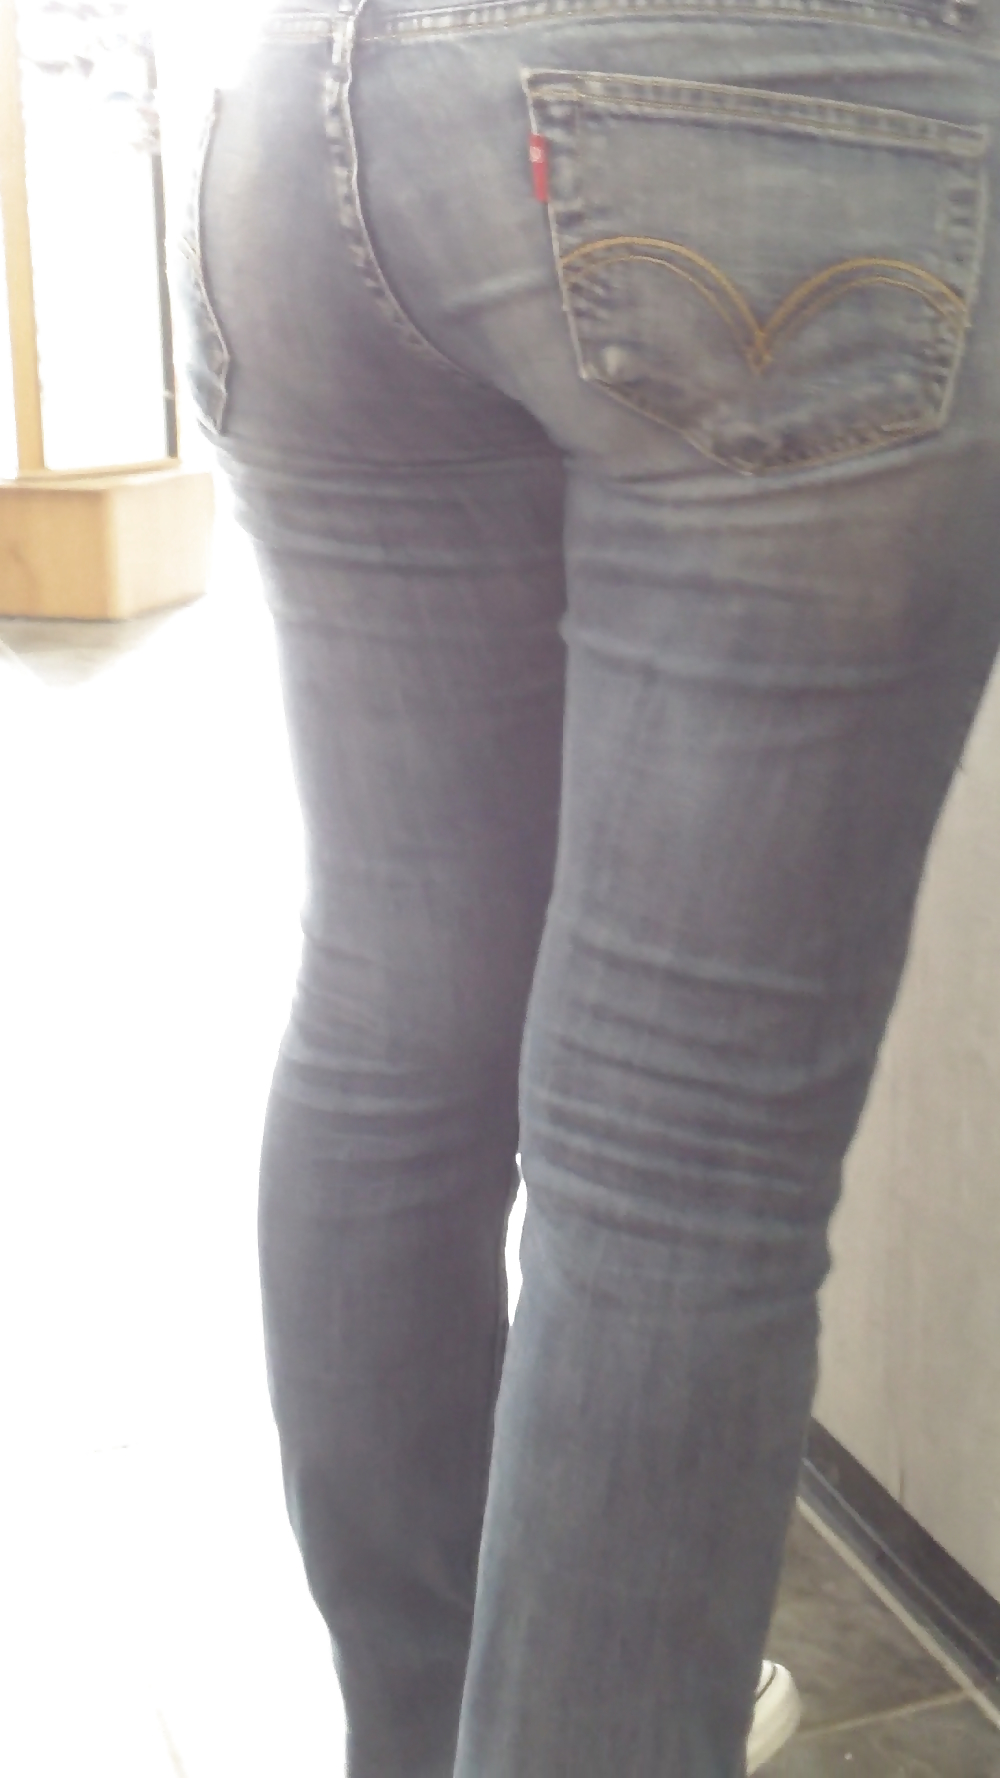 Populäre Jugendlich Mädchen Stummel & Arsch In Jeans #21501037